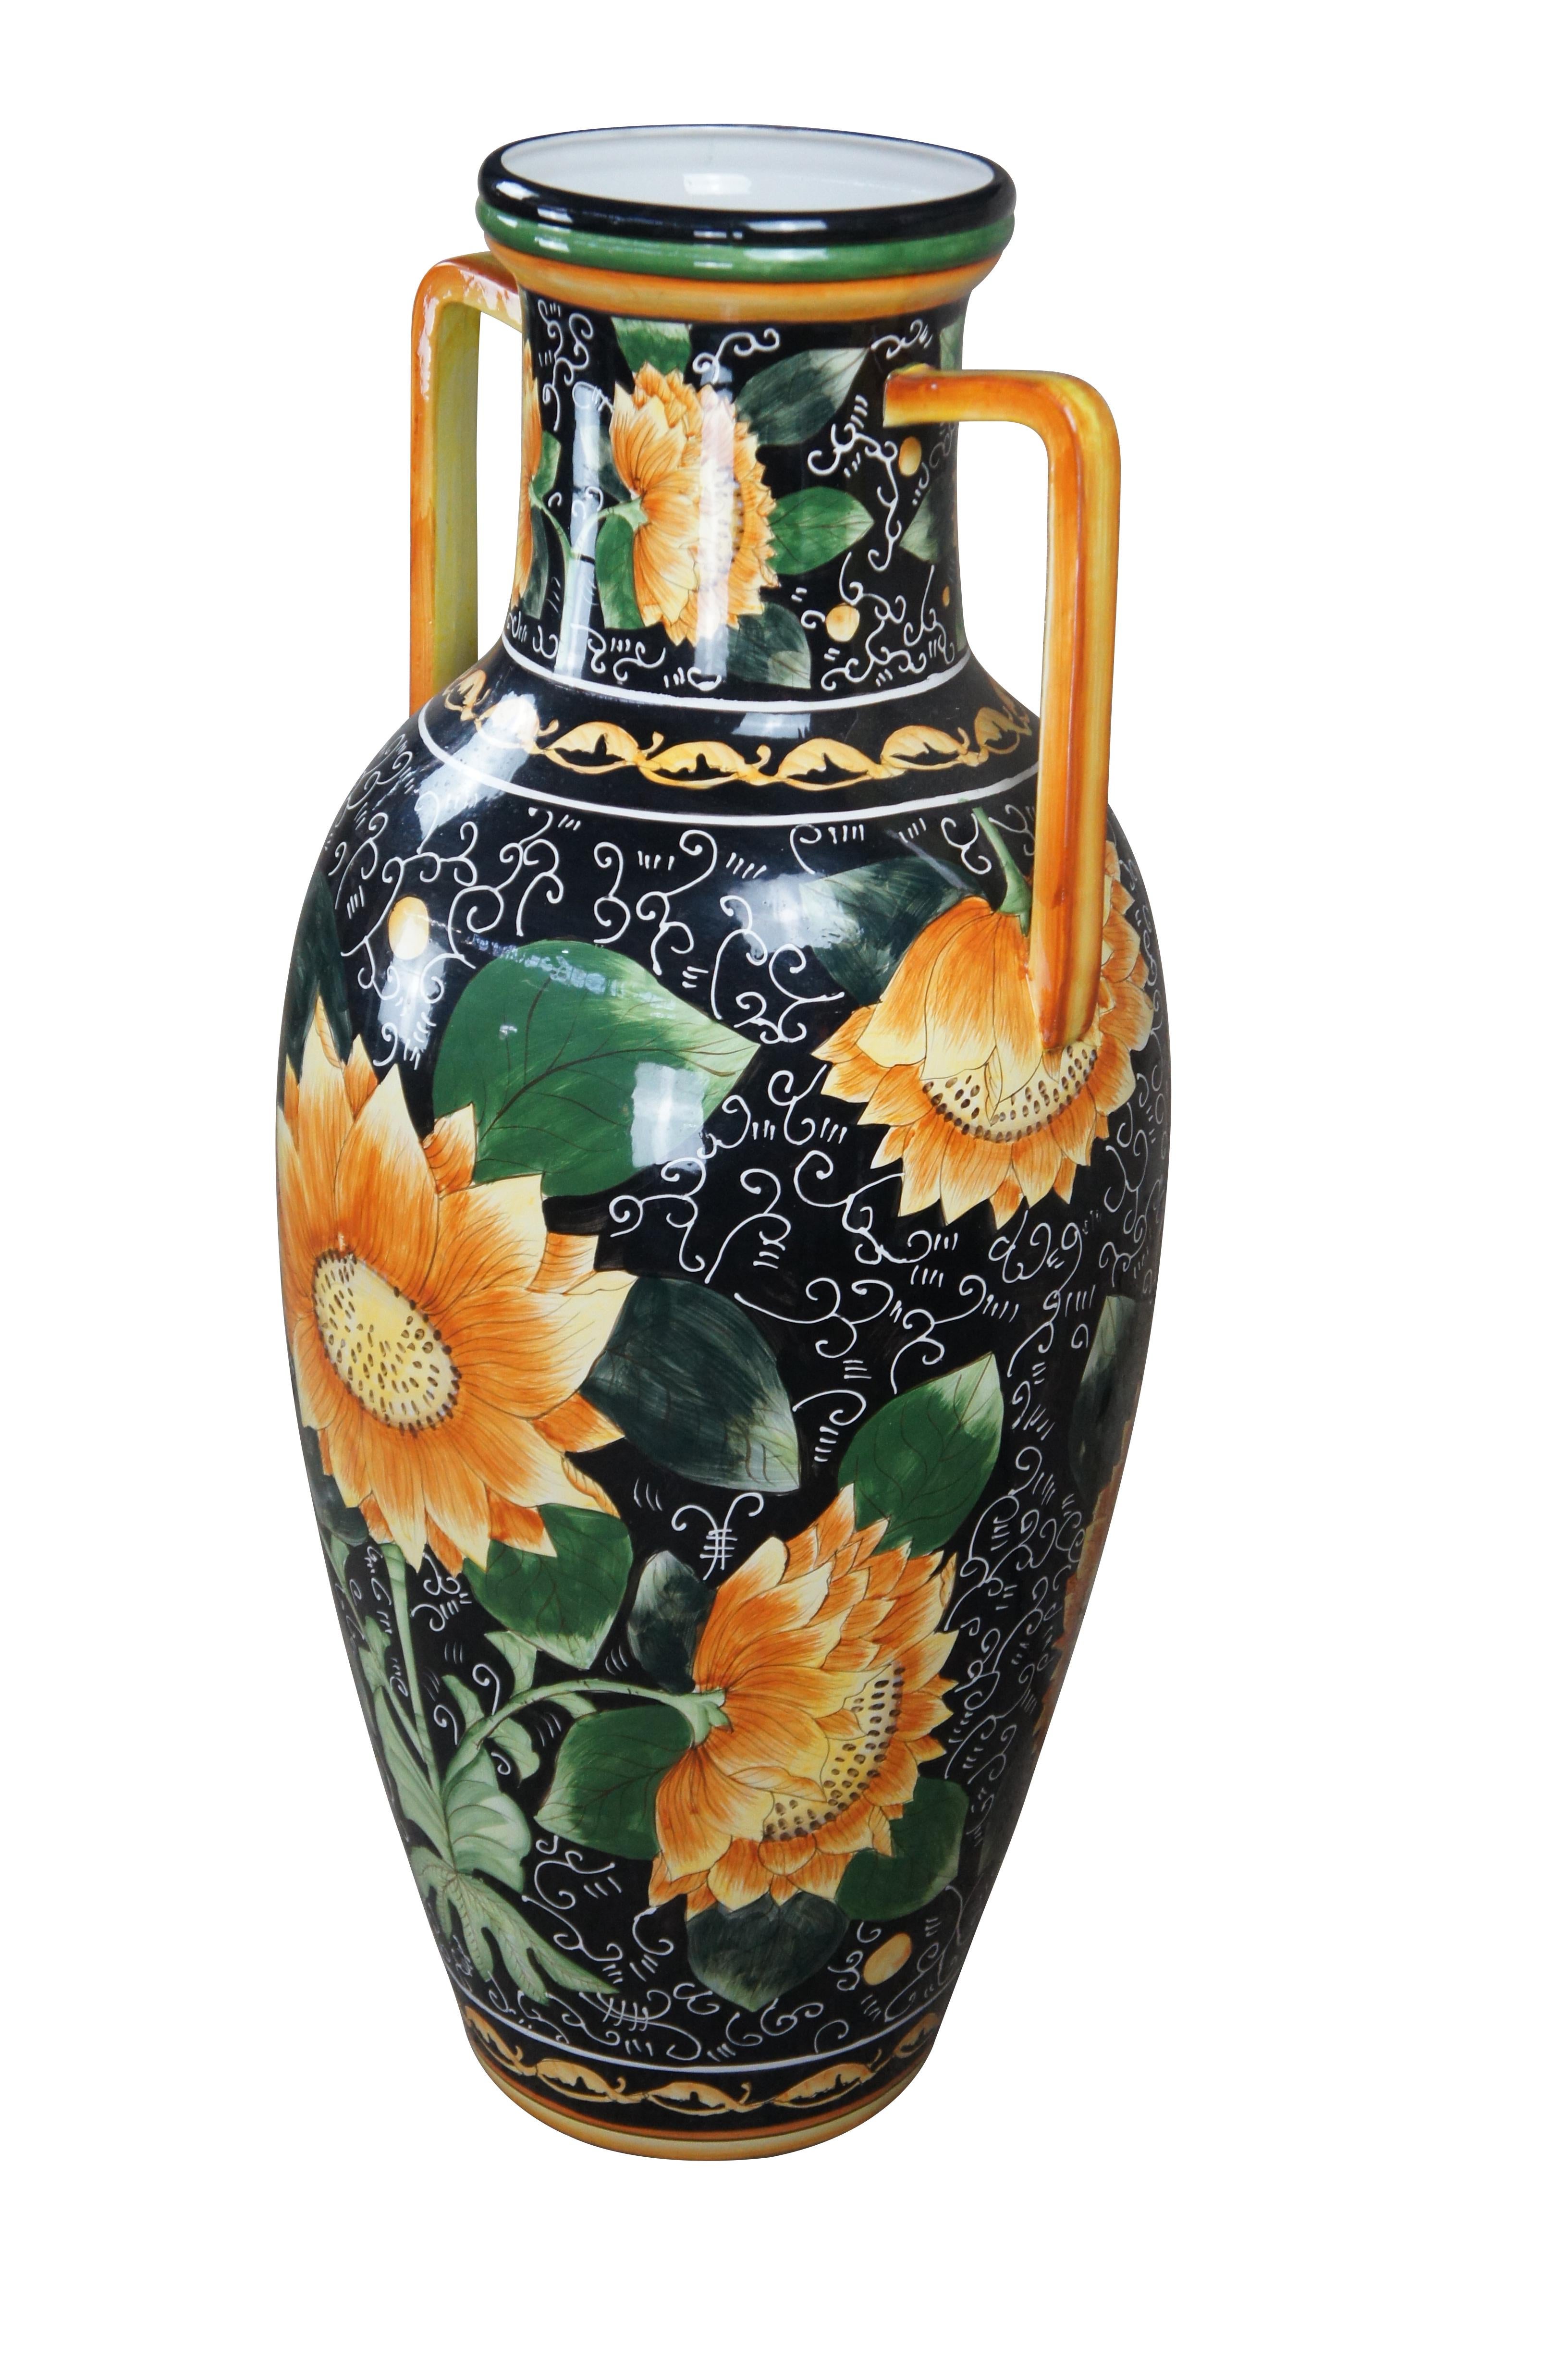 Grand vase de sol ou urne vintage de style italien.  En porcelaine, avec un motif de tournesol sur fond noir et de grandes poignées. 

Dimensions :
18.5